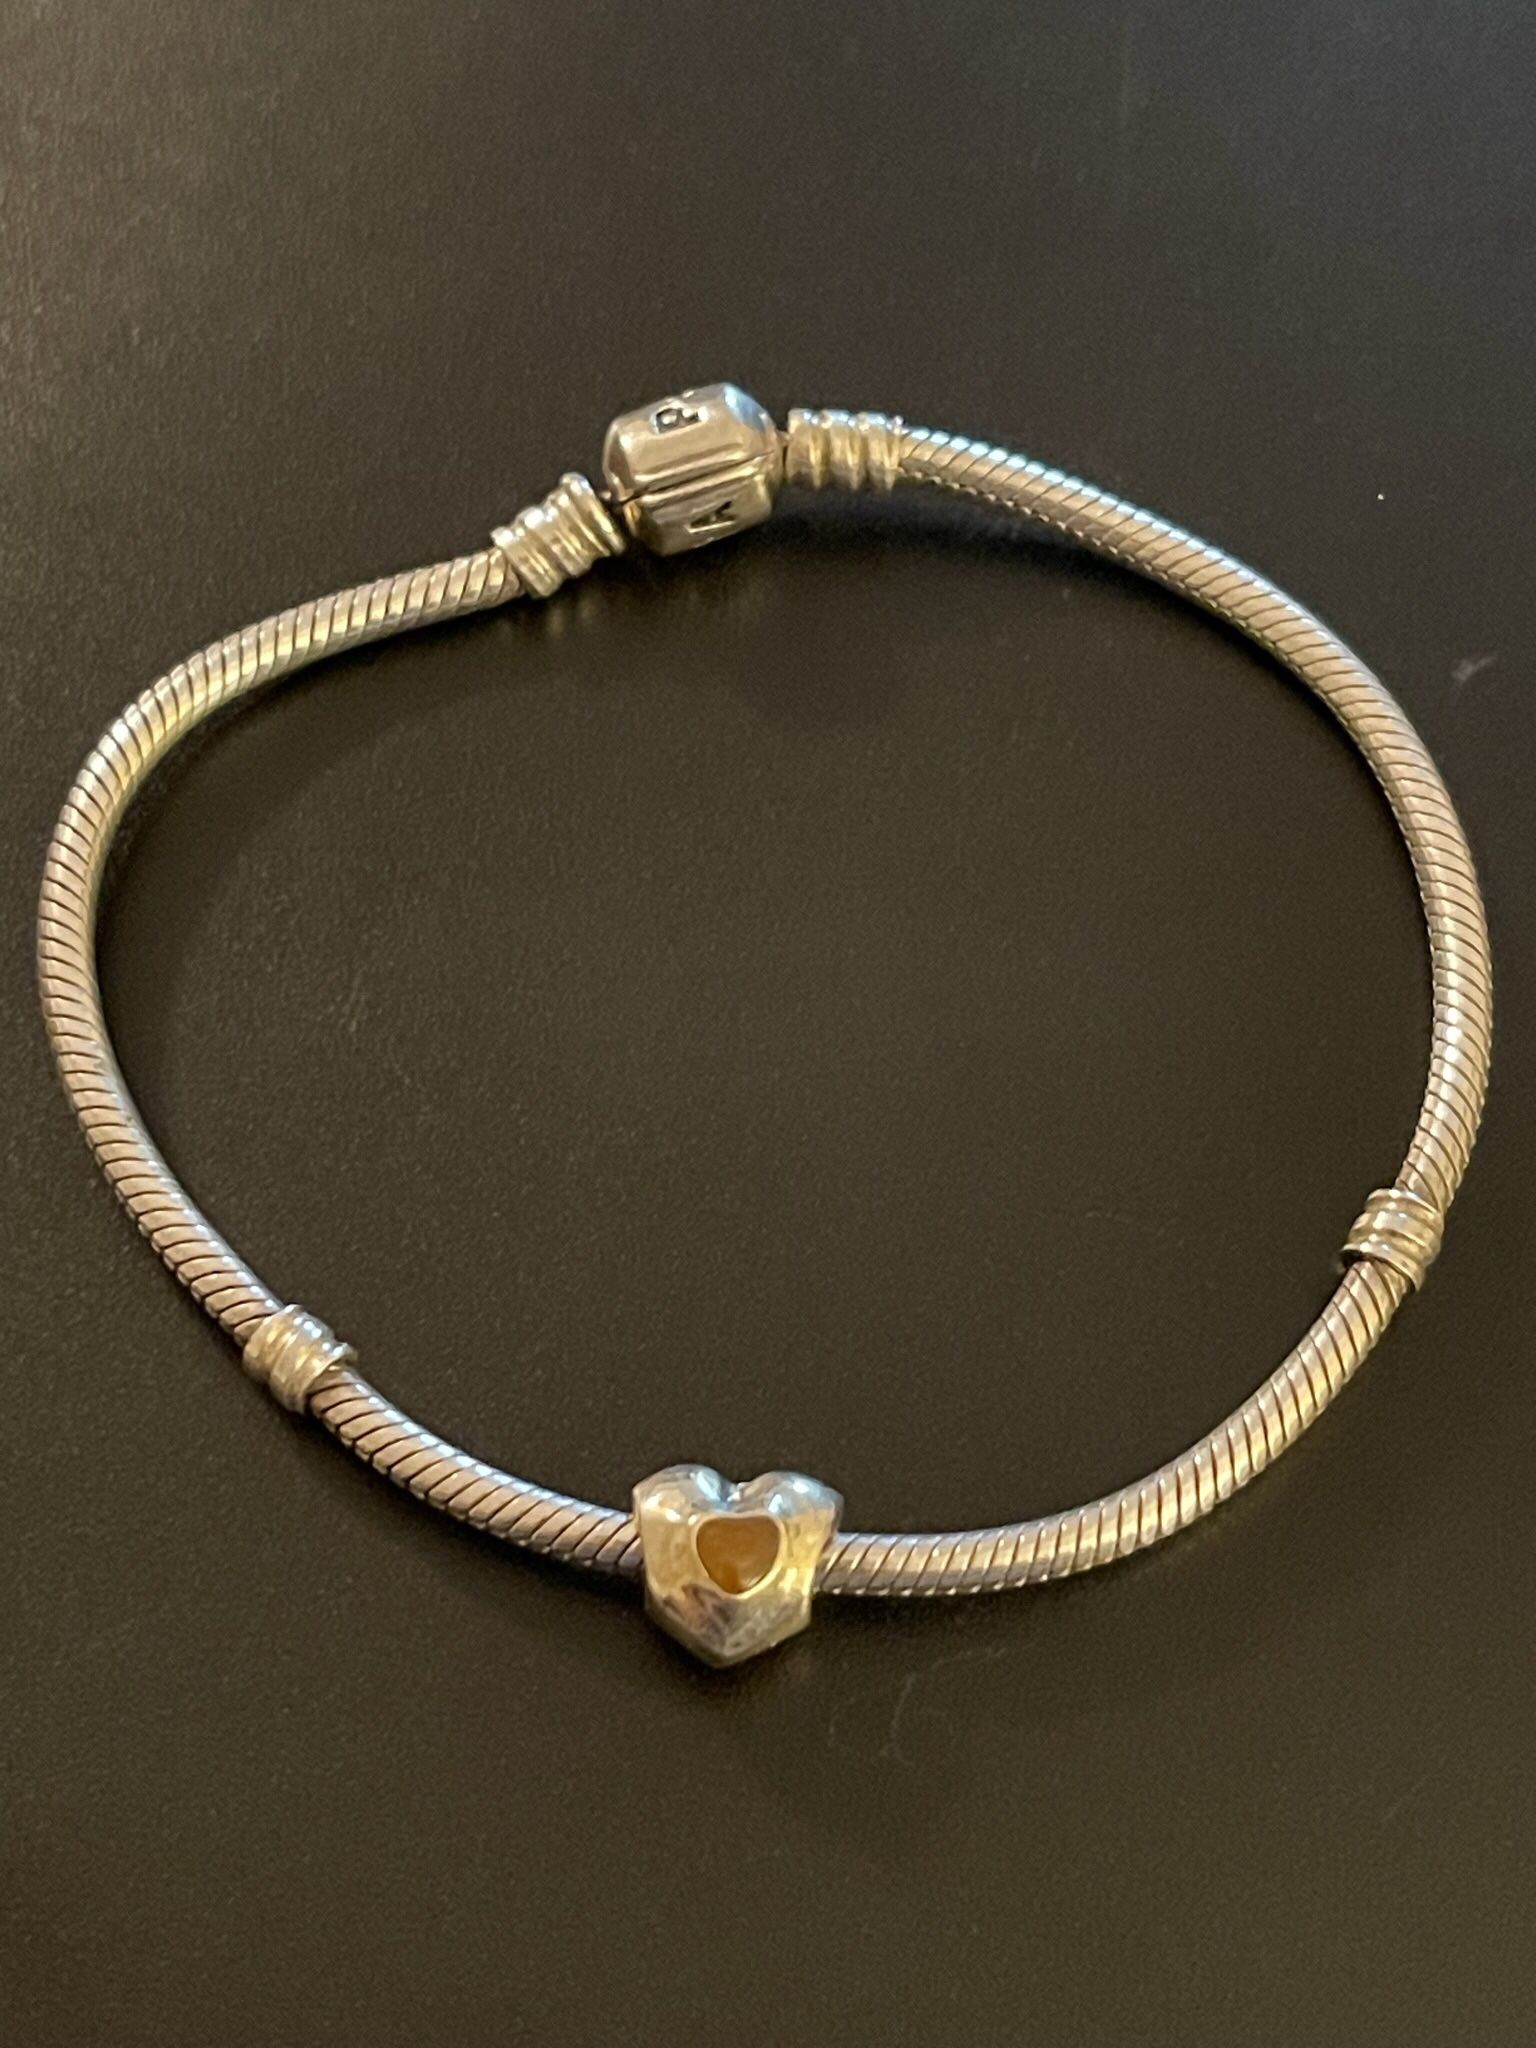 Silver Charm That Fits Pandora Bracelet